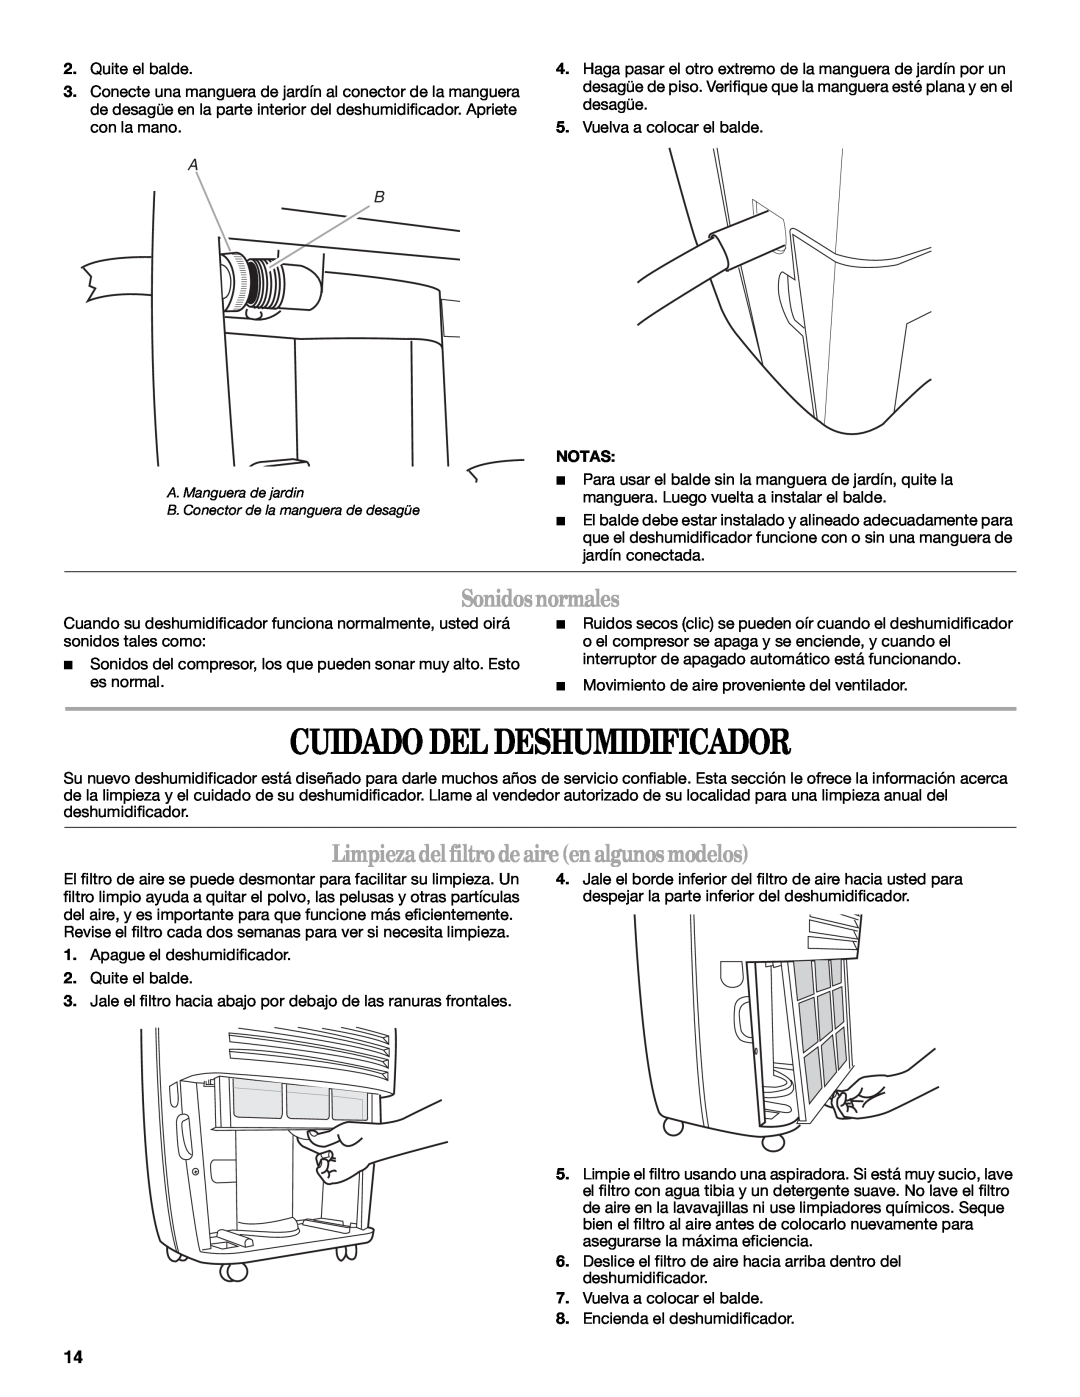 Whirlpool AD40DSS0 manual Cuidado Del Deshumidificador, Sonidosnormales, Limpiezadel filtrodeaireen algunos modelos 